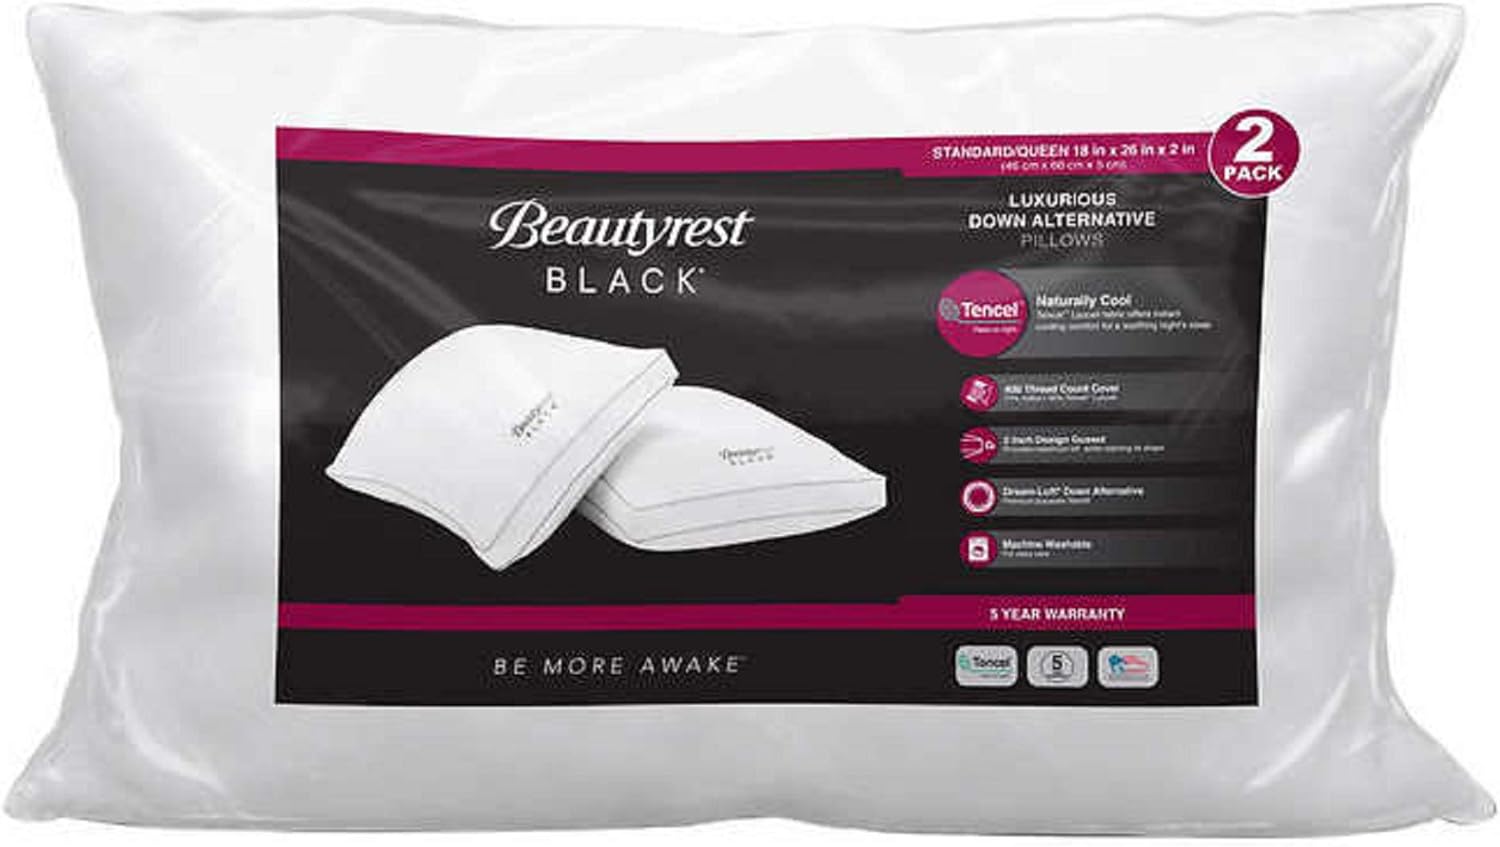 Beautyrest Black Down Alternative Pillows Review